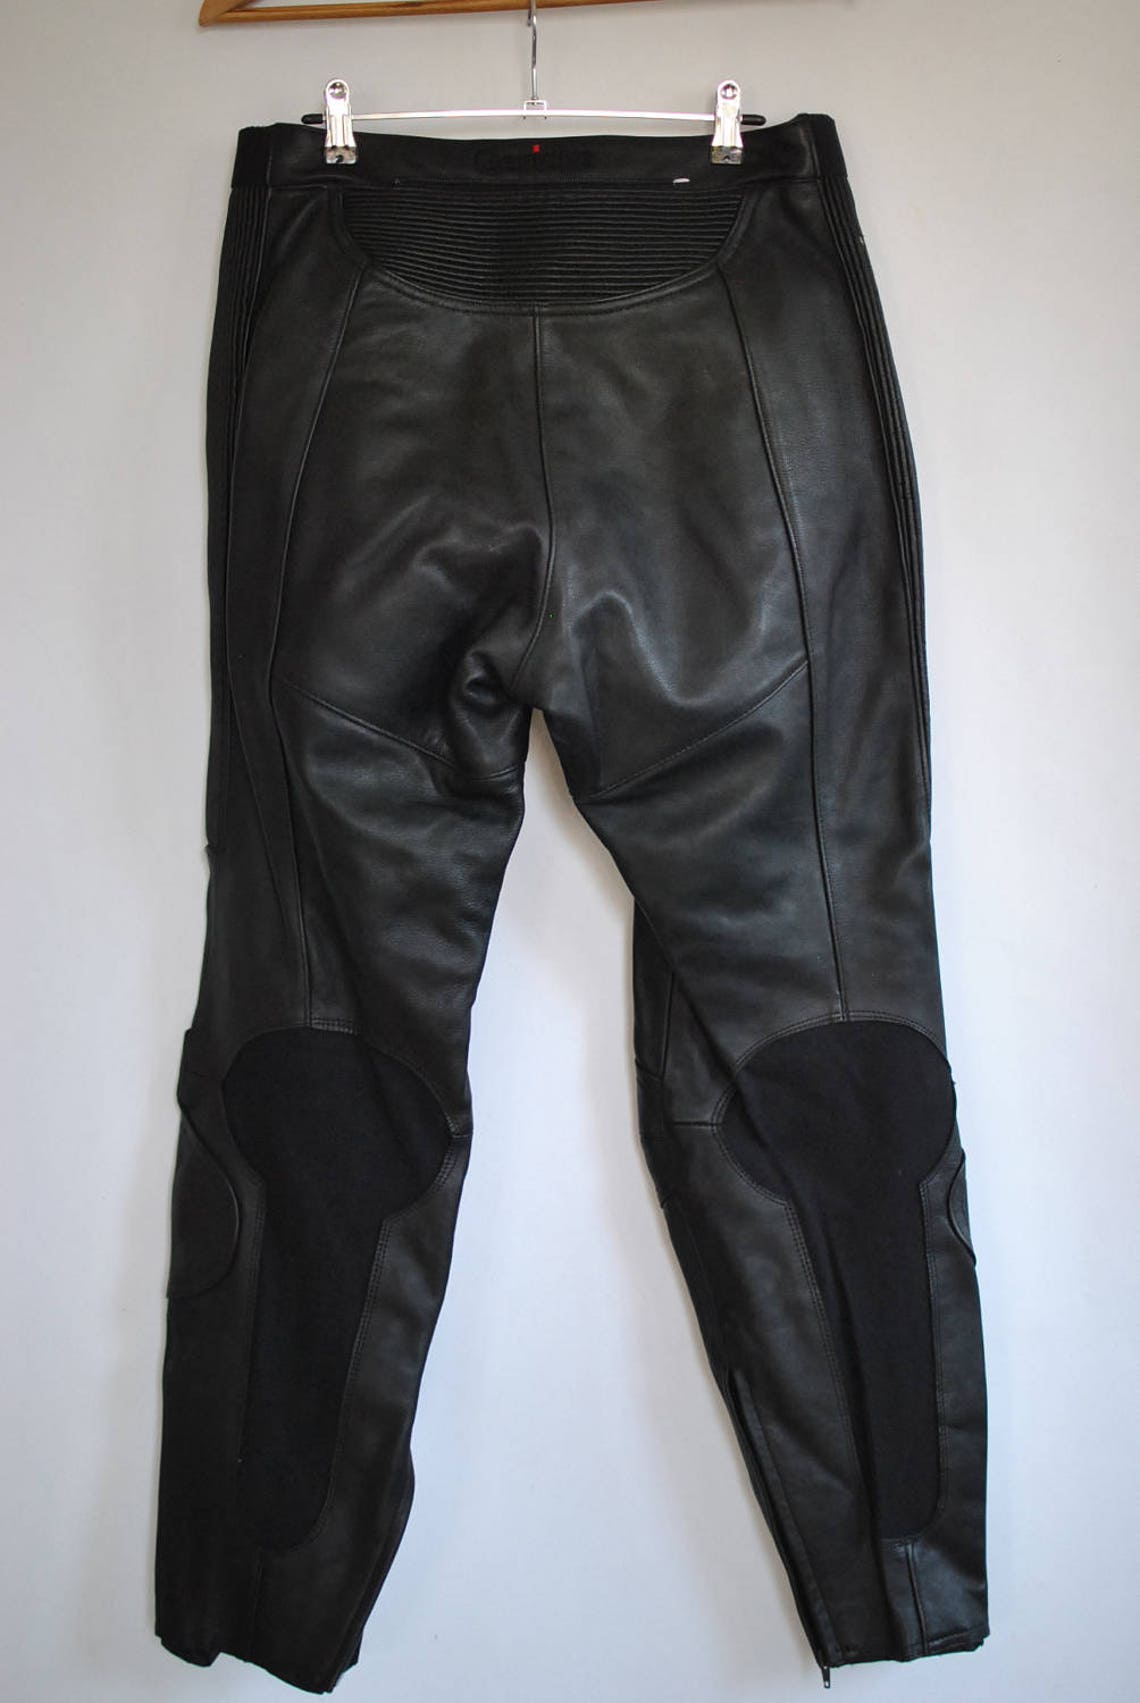 Vintage HEIN GERICKE women's LEATHER biker pants | Etsy